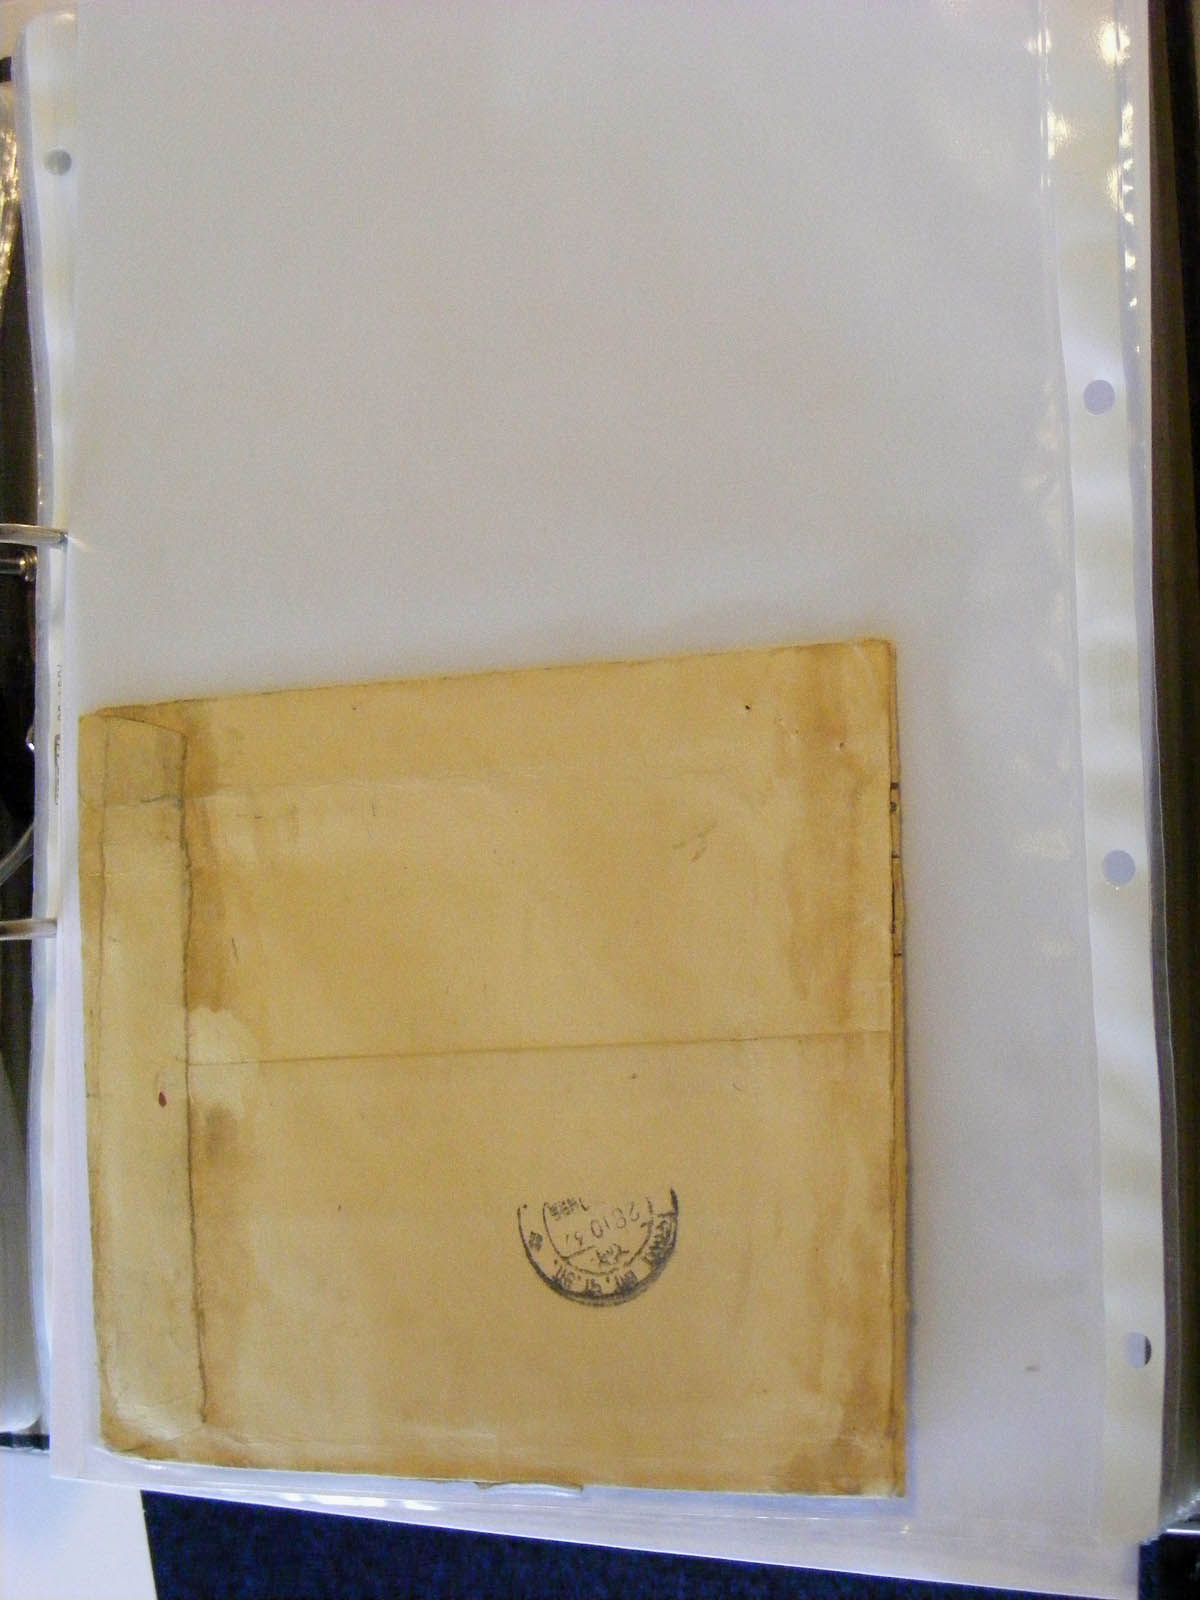 19584-1 084 - 19584 India dienst brieven.